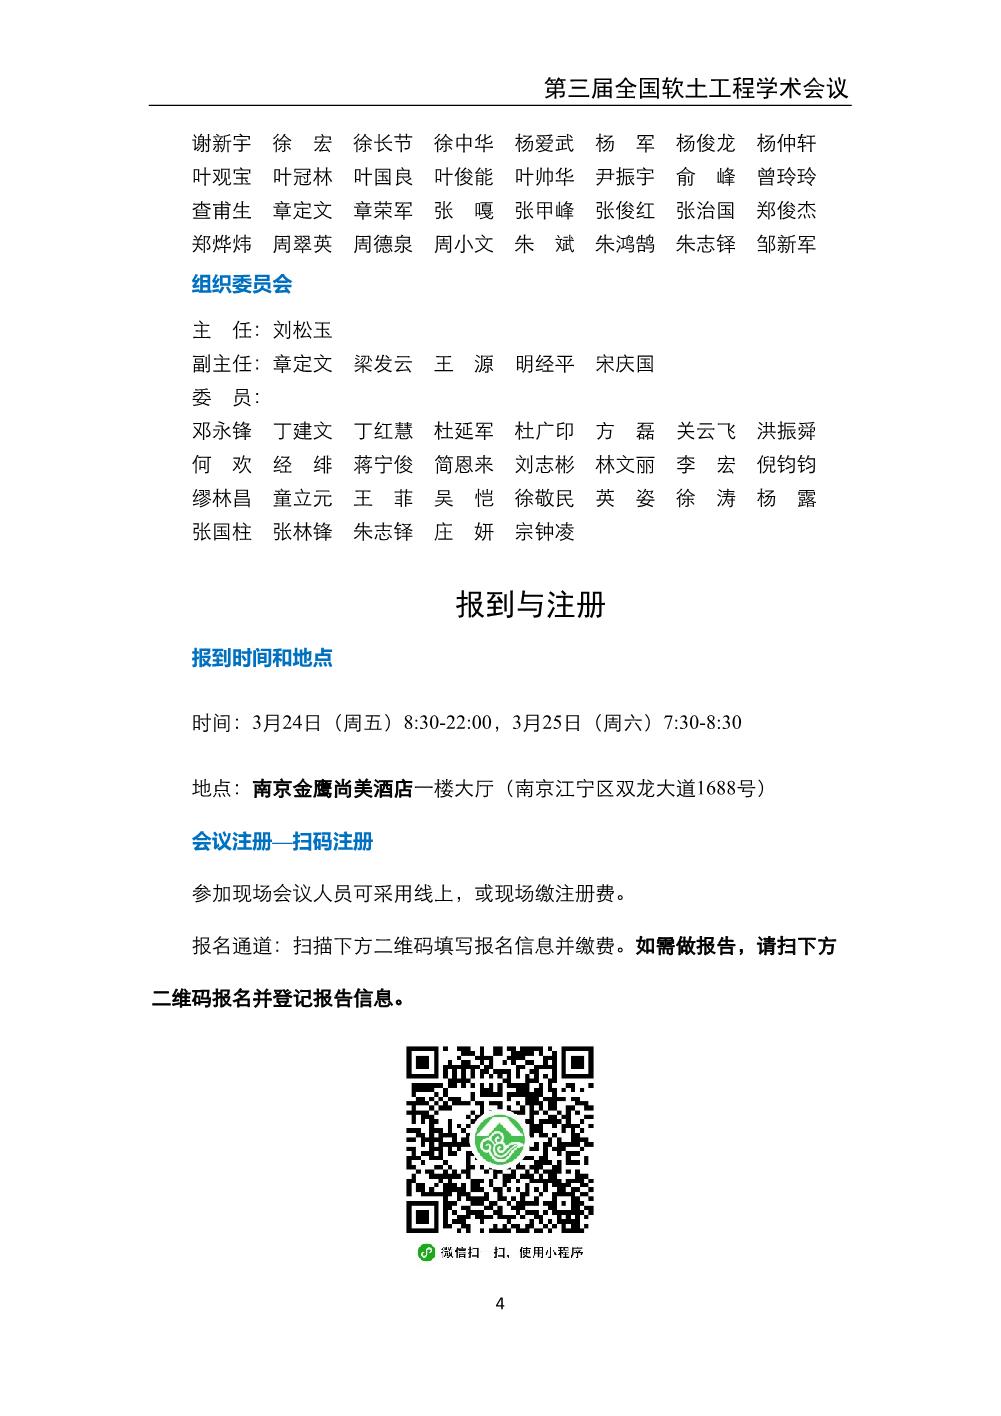 2023.3.24-26 南京 第三届全国软土工程学术会议-会议手册_6.jpg